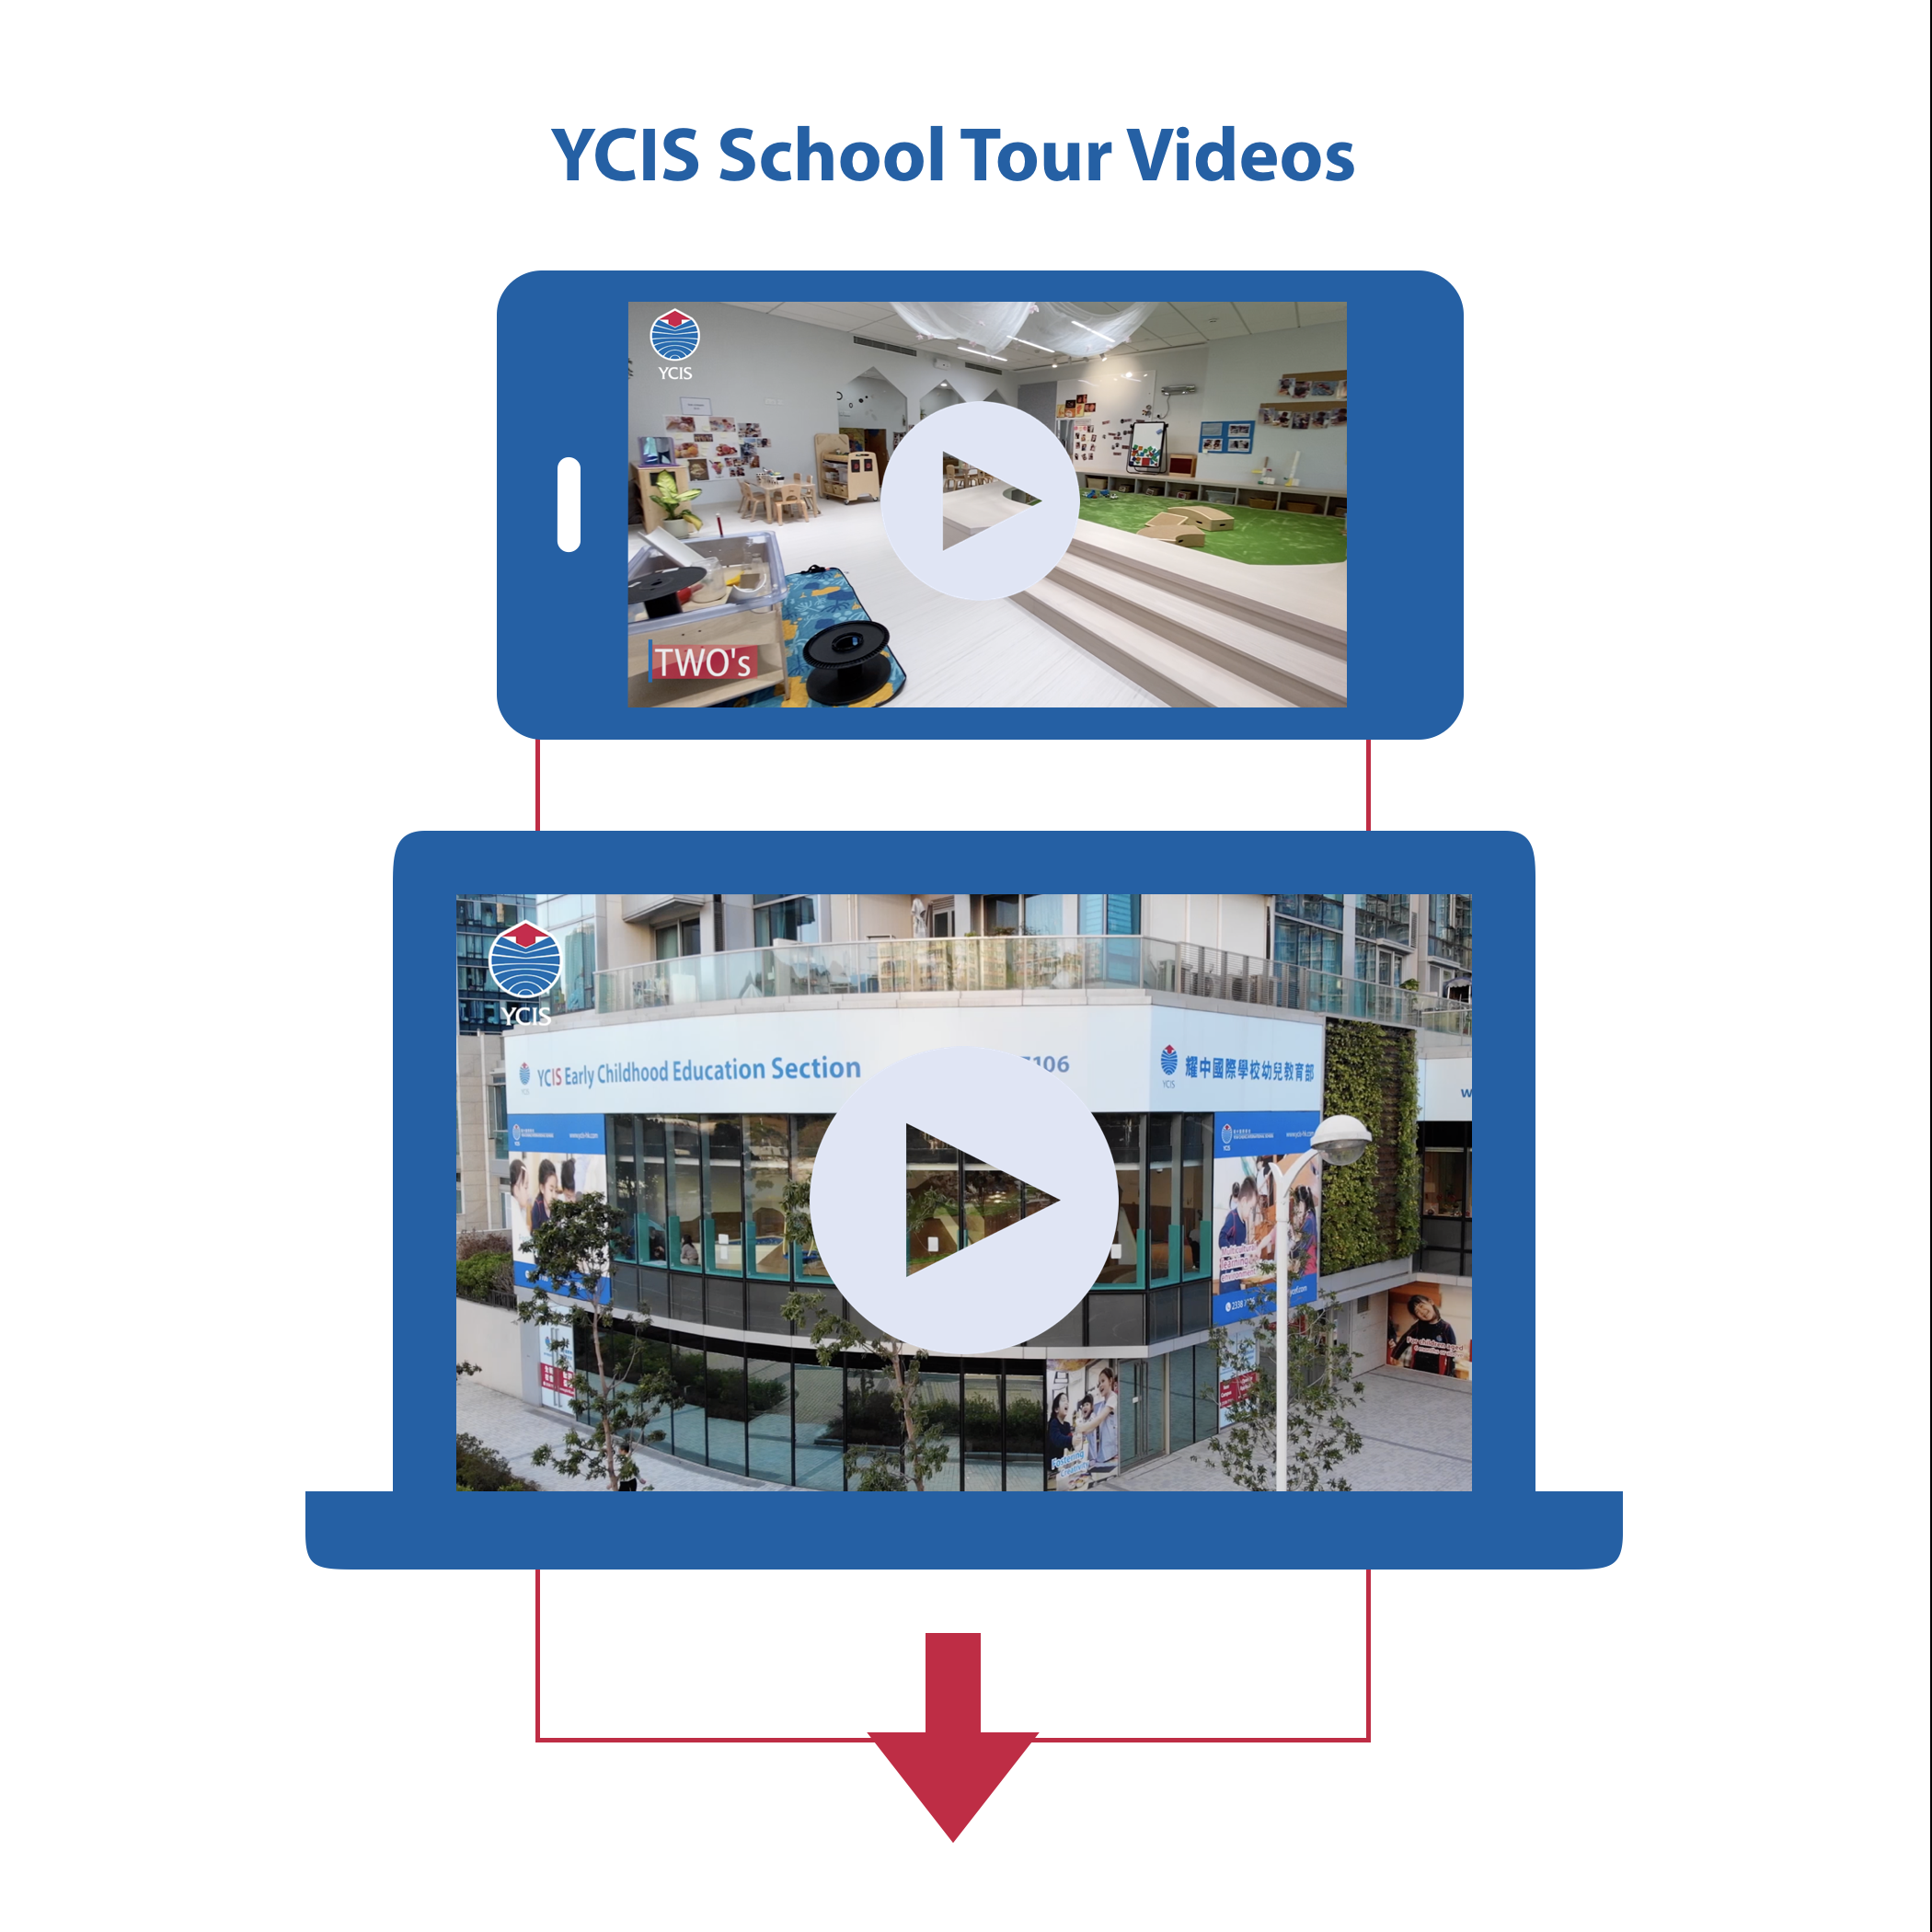 ycis school tour